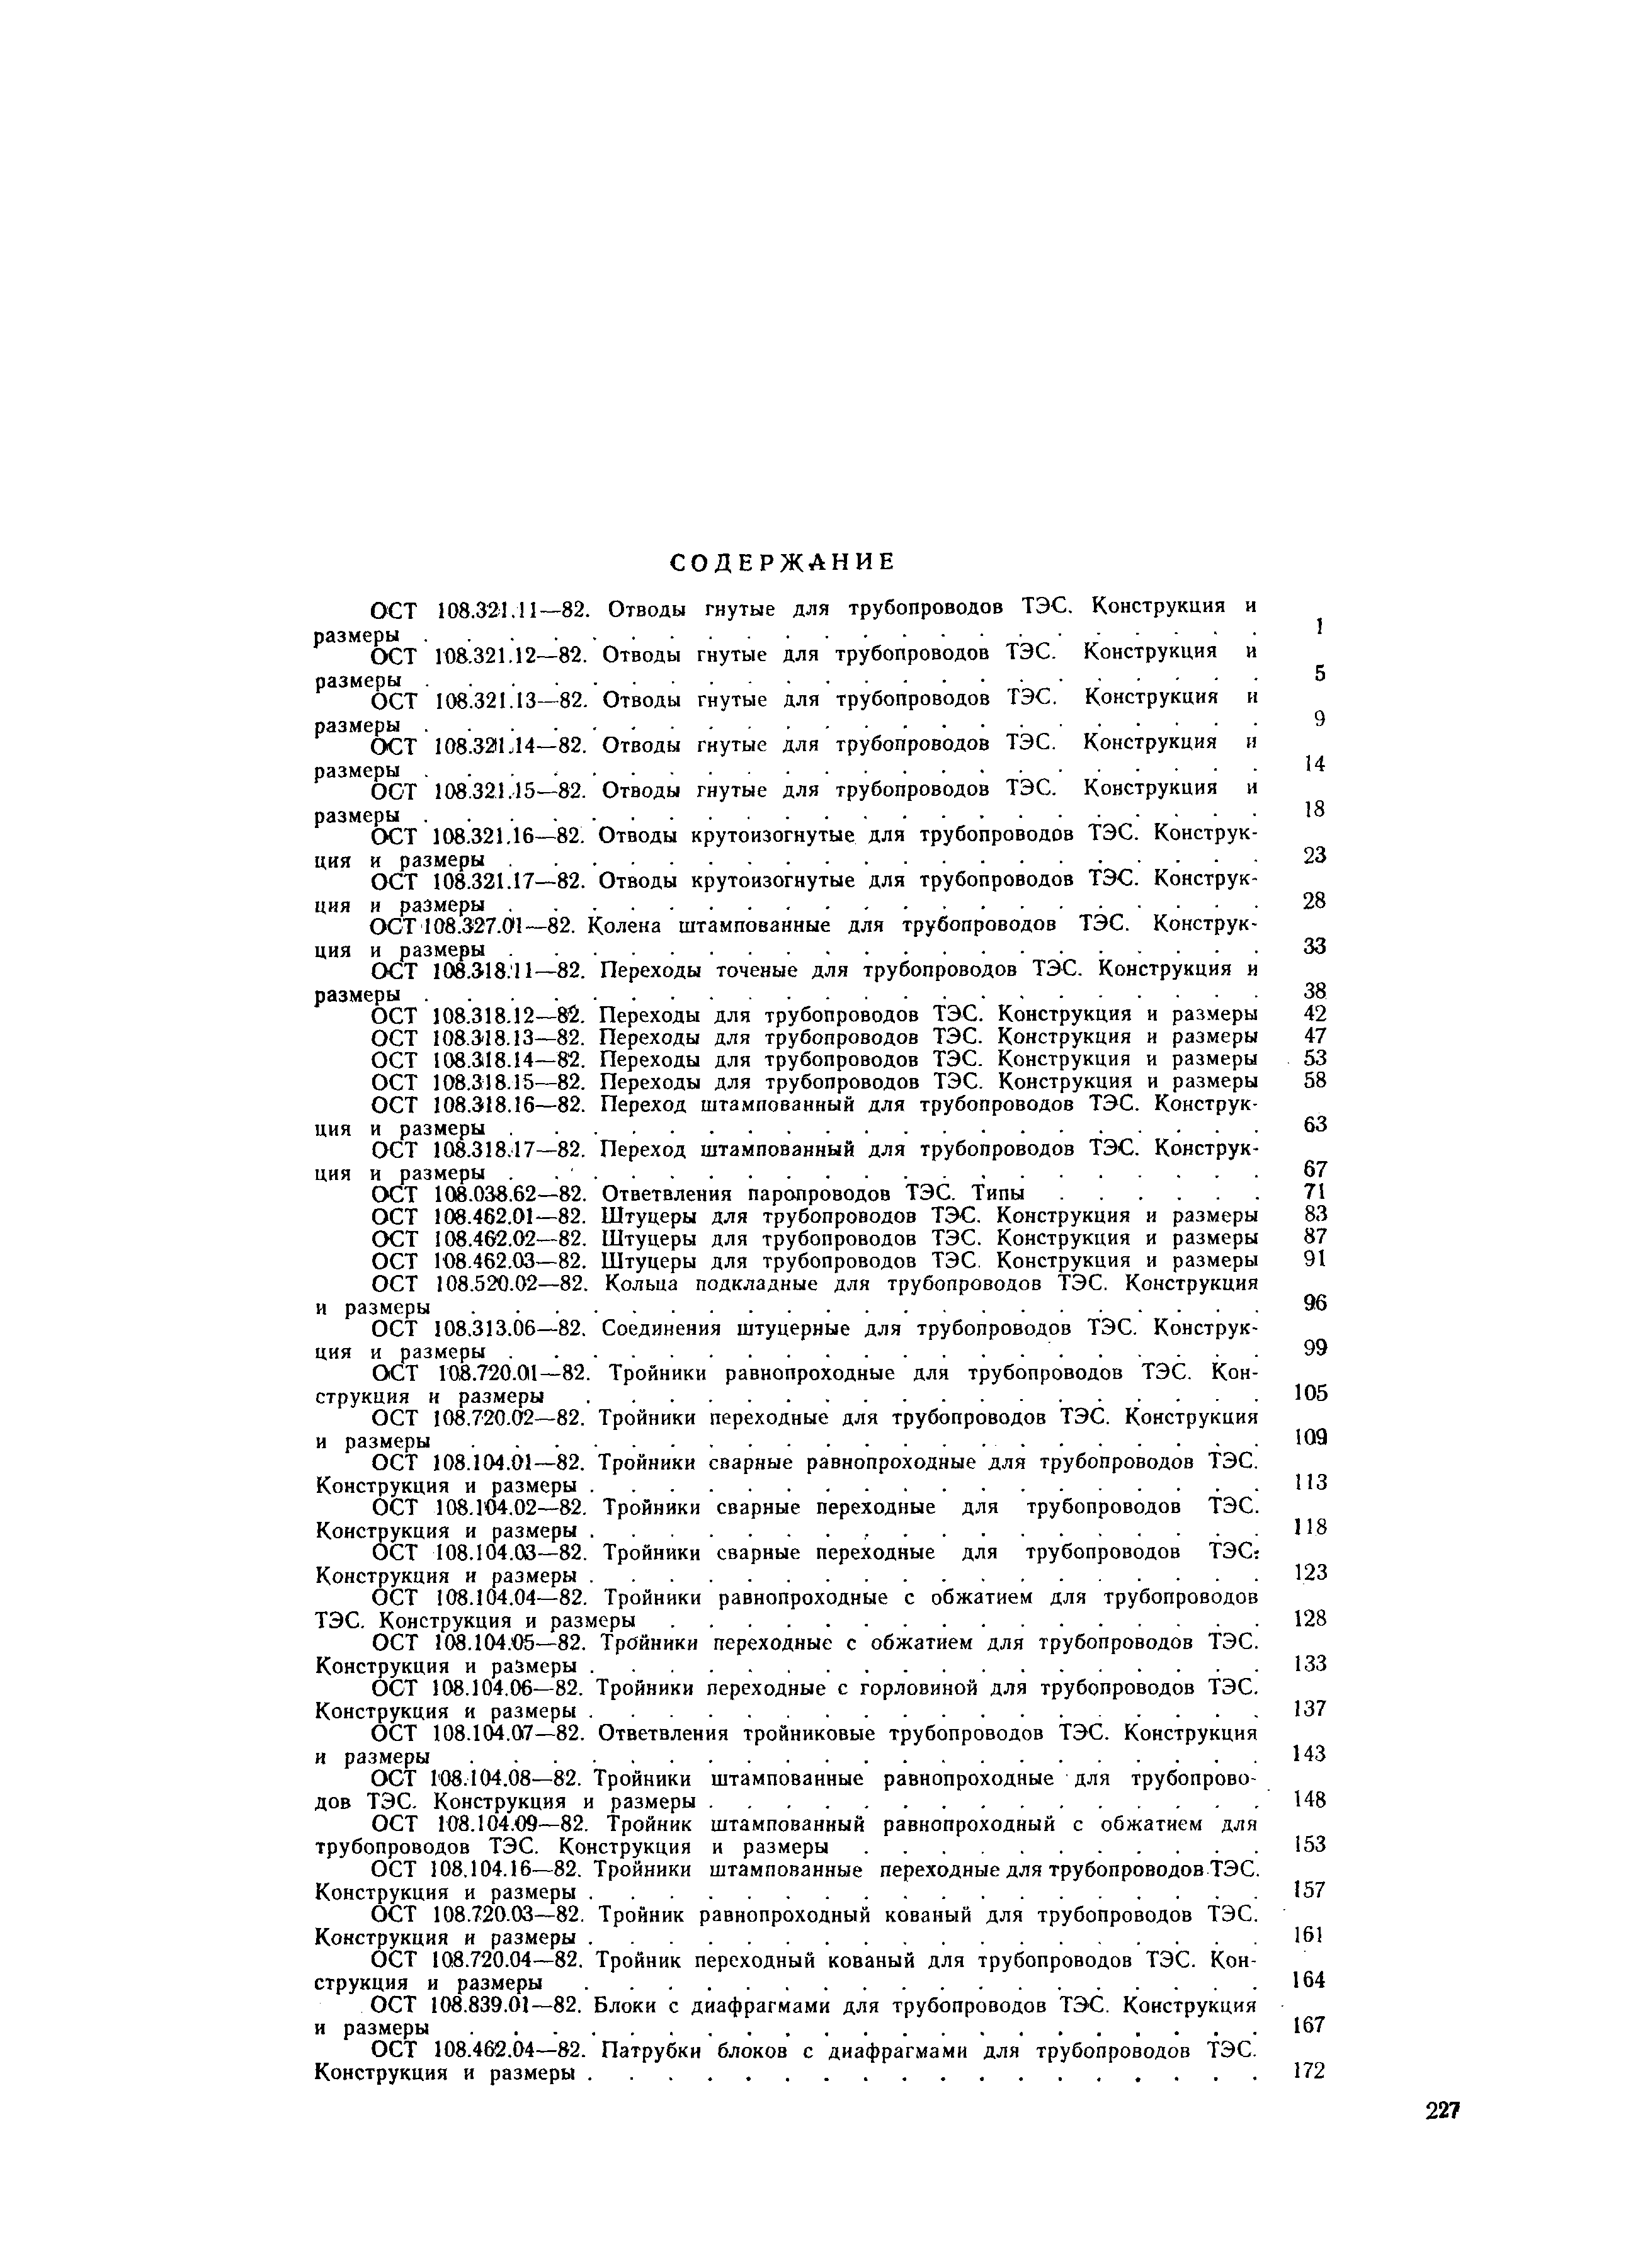 ОСТ 108.321.17-82